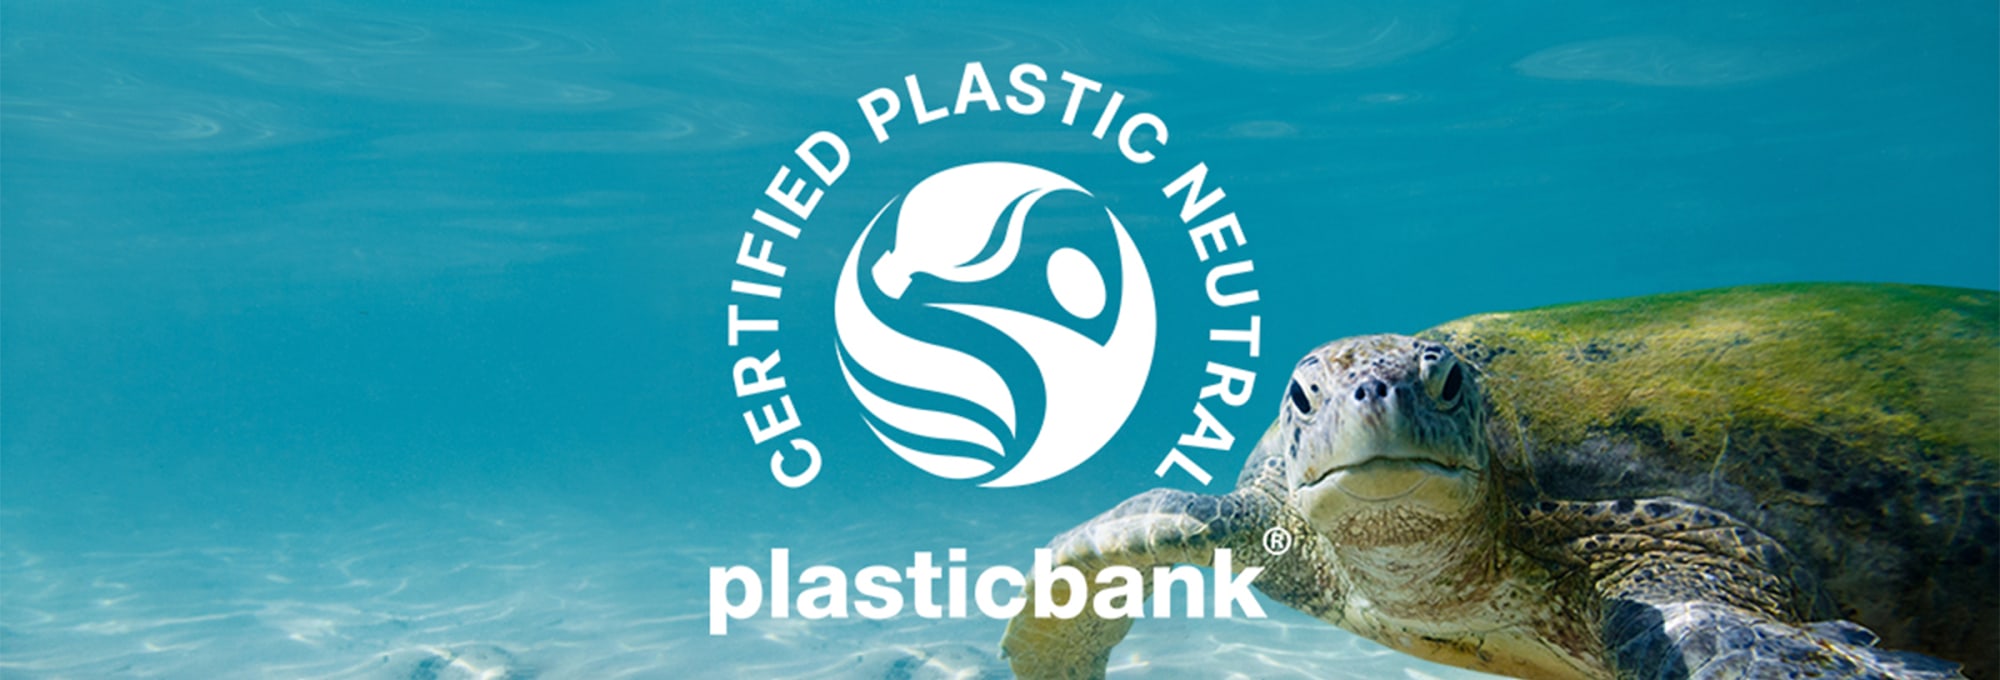 Skilpadde under vann med en tegnet logo over som sier: Certified plastic neutral plasticbank.